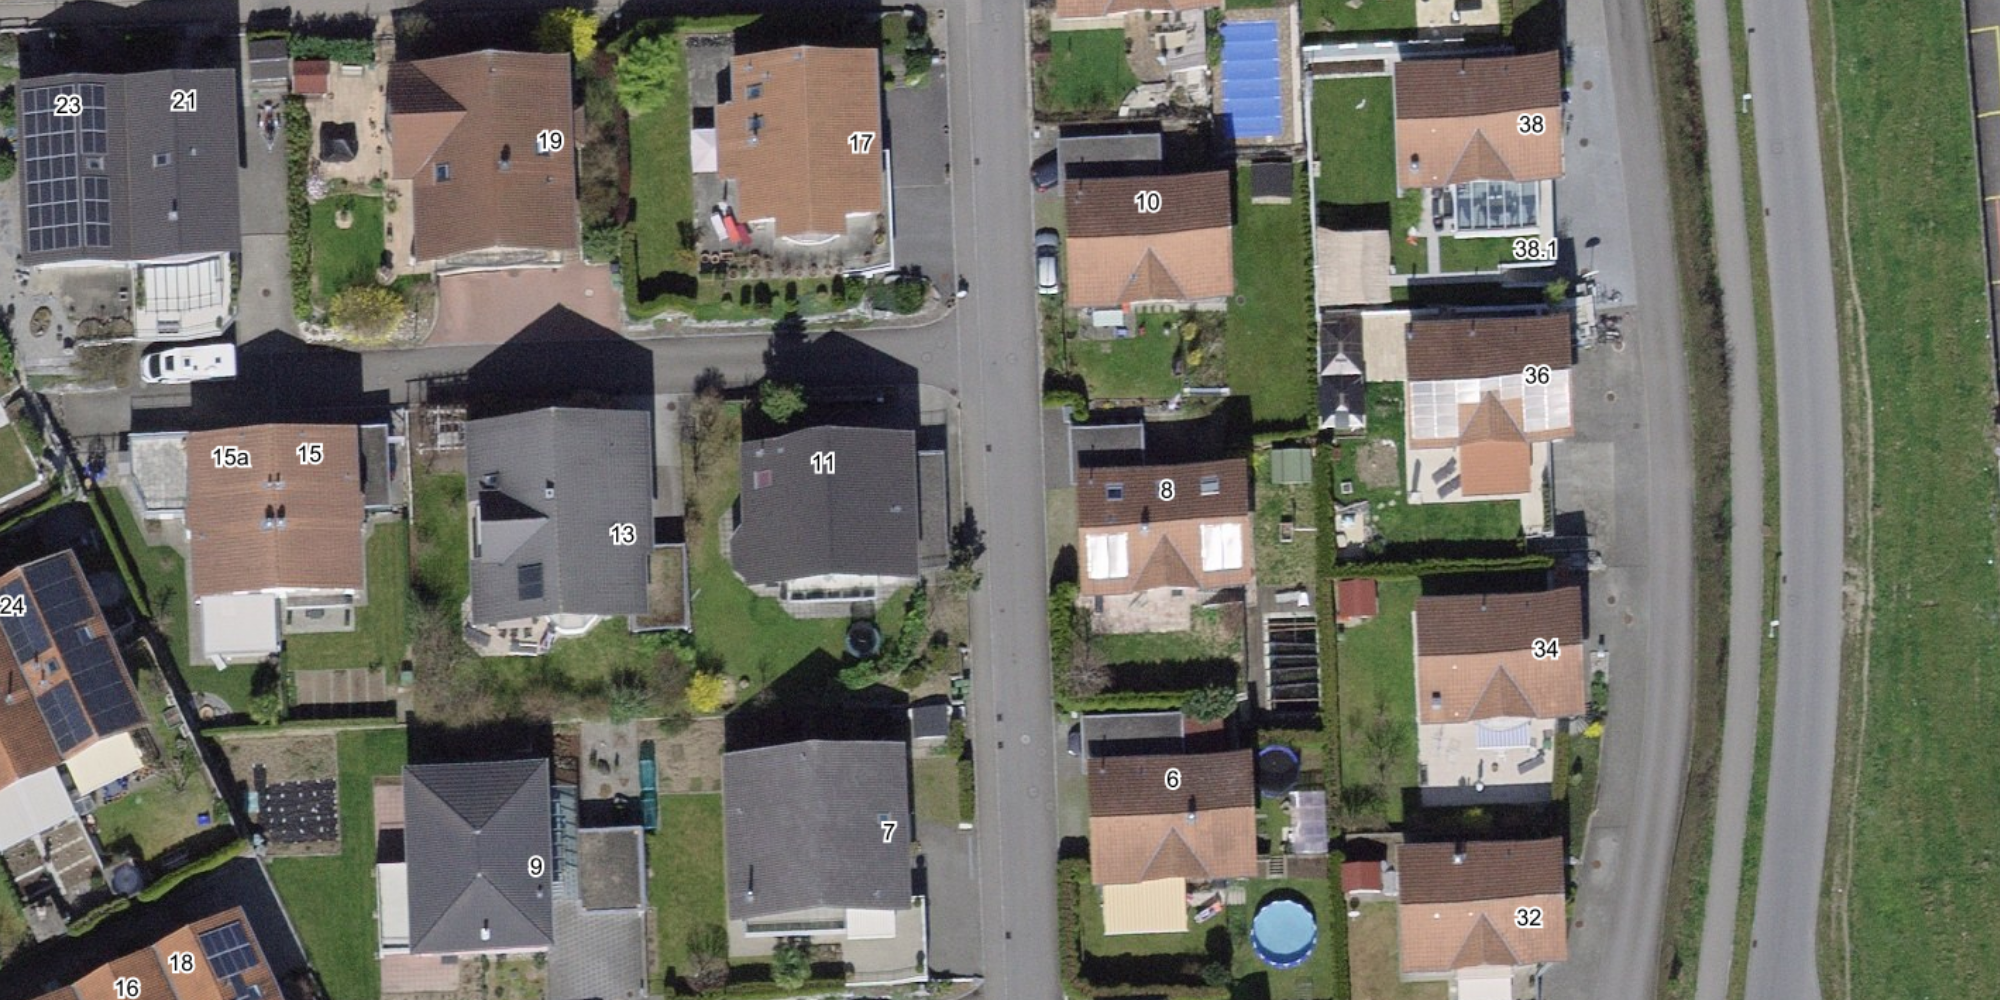 L'image montre une vue aérienne d'un quartier de maisons individuelles, avec les adresses des bâtiments correspondants.